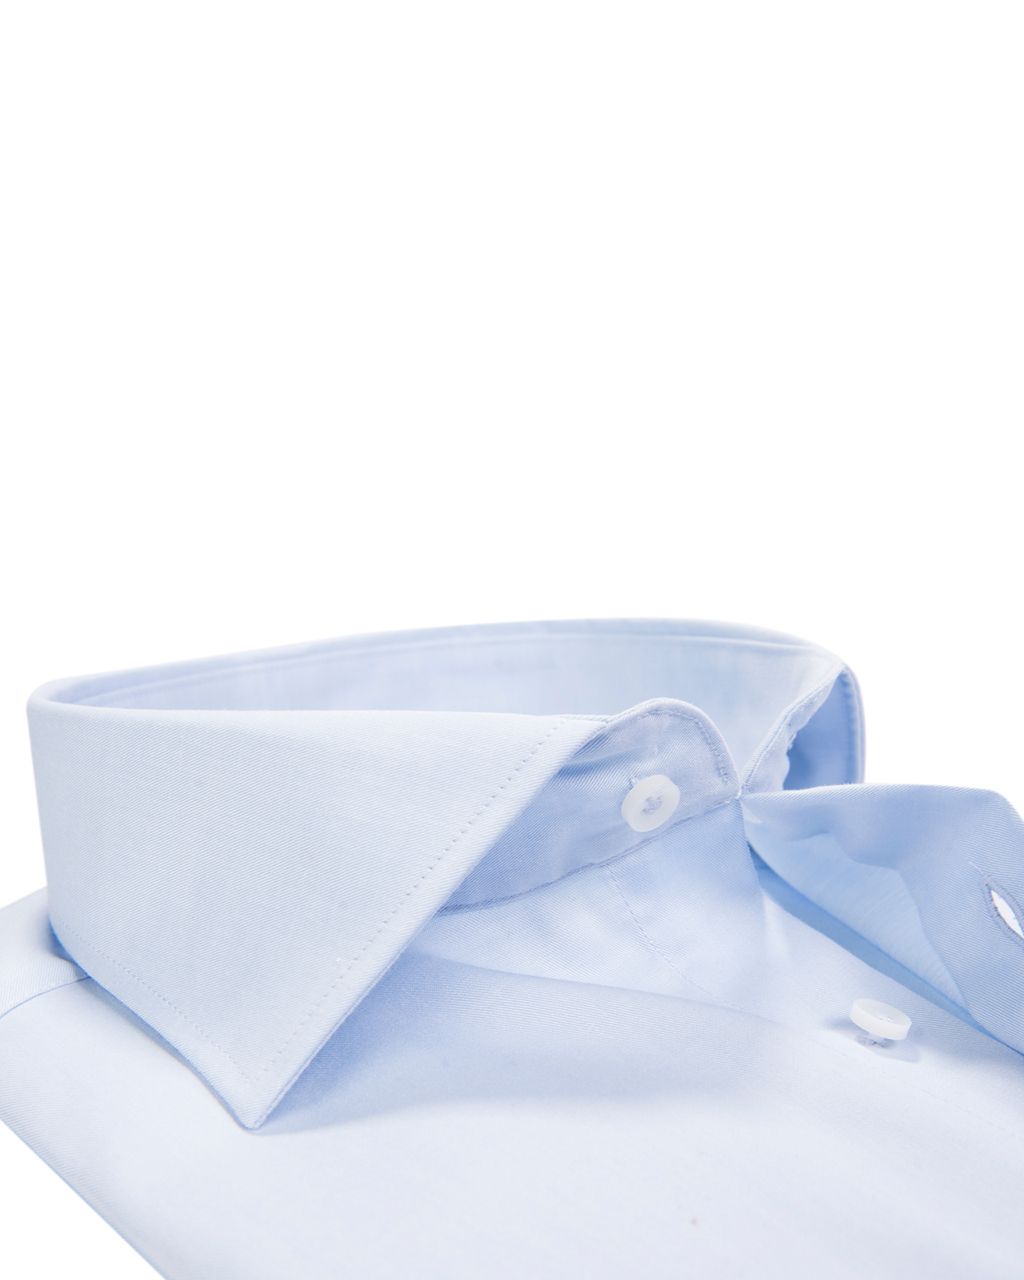 Profuomo Originale Slim fit Overhemd LM Blauw 002303-32-37